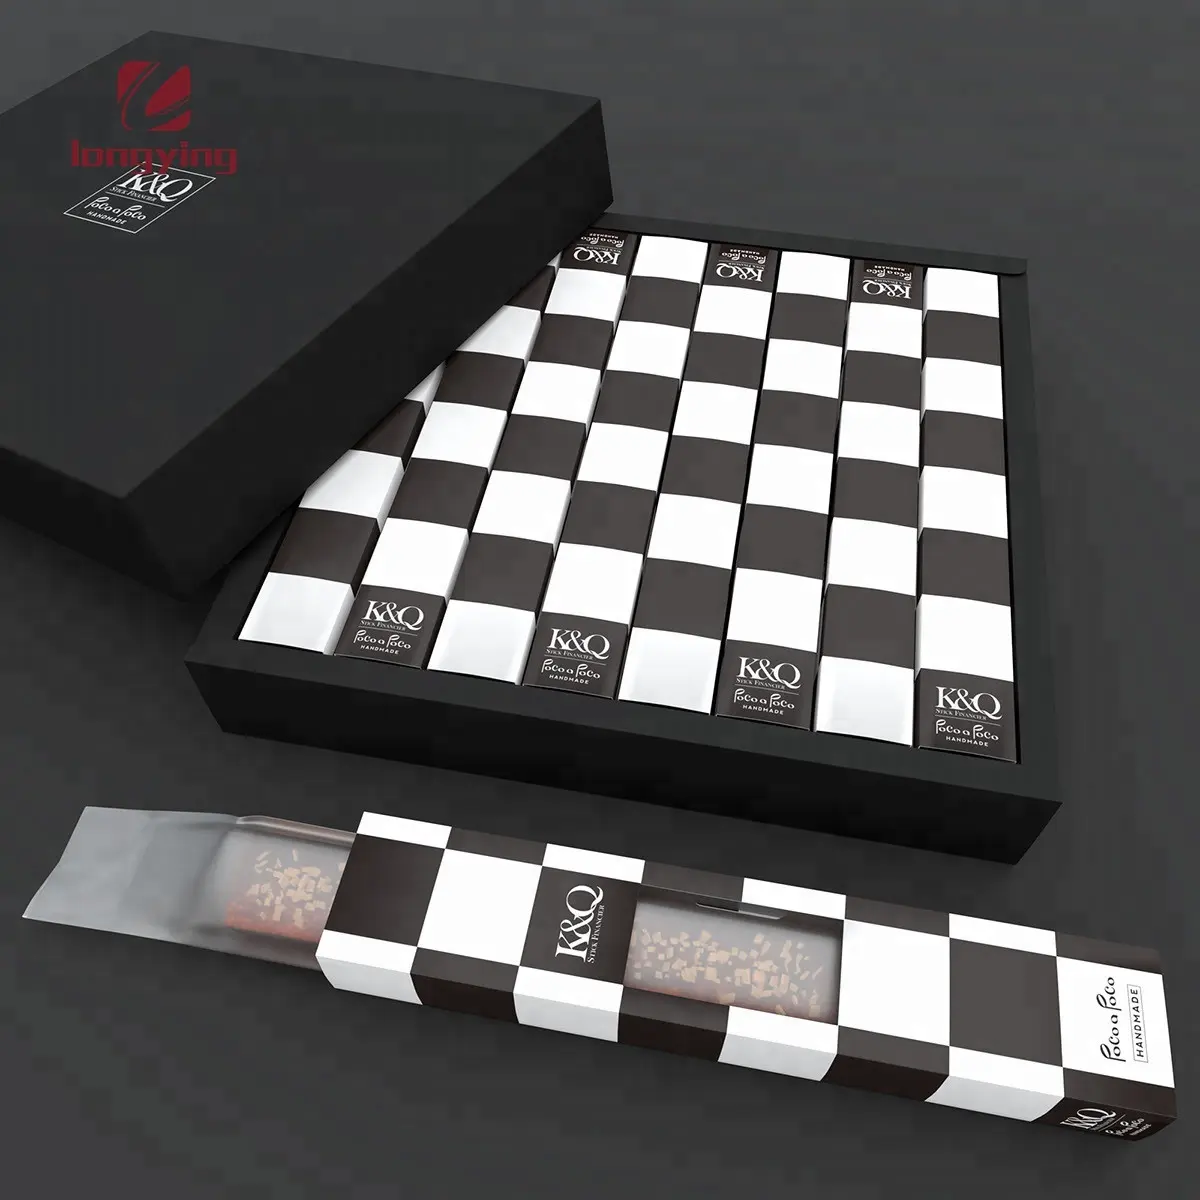 Juego de ajedrez en caja impresa